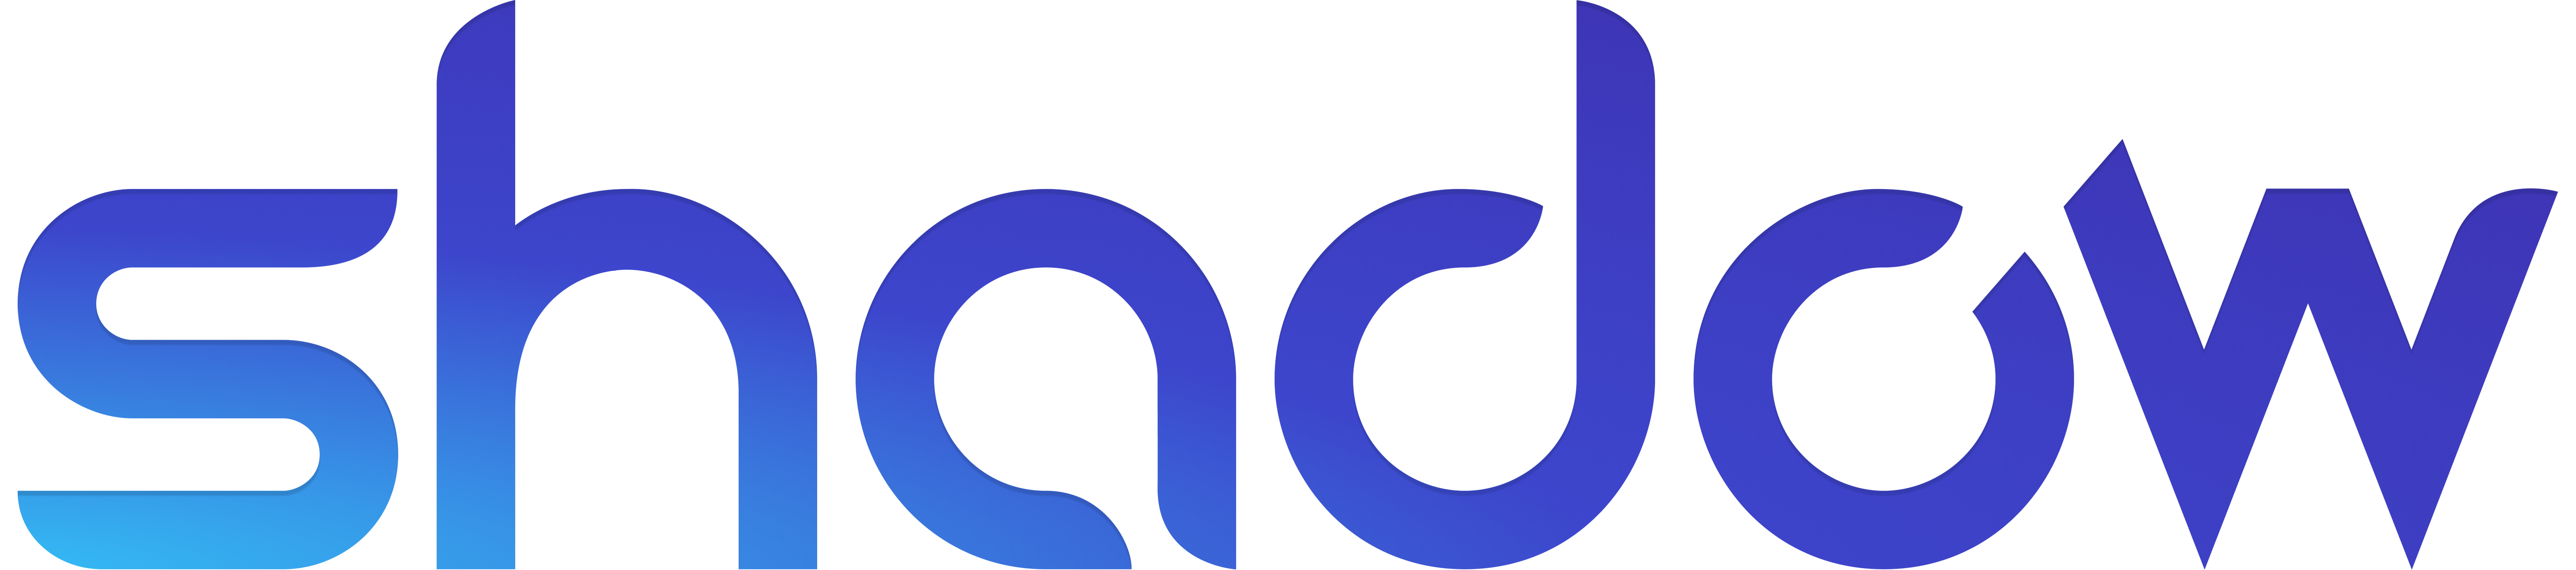 SHADOW logo